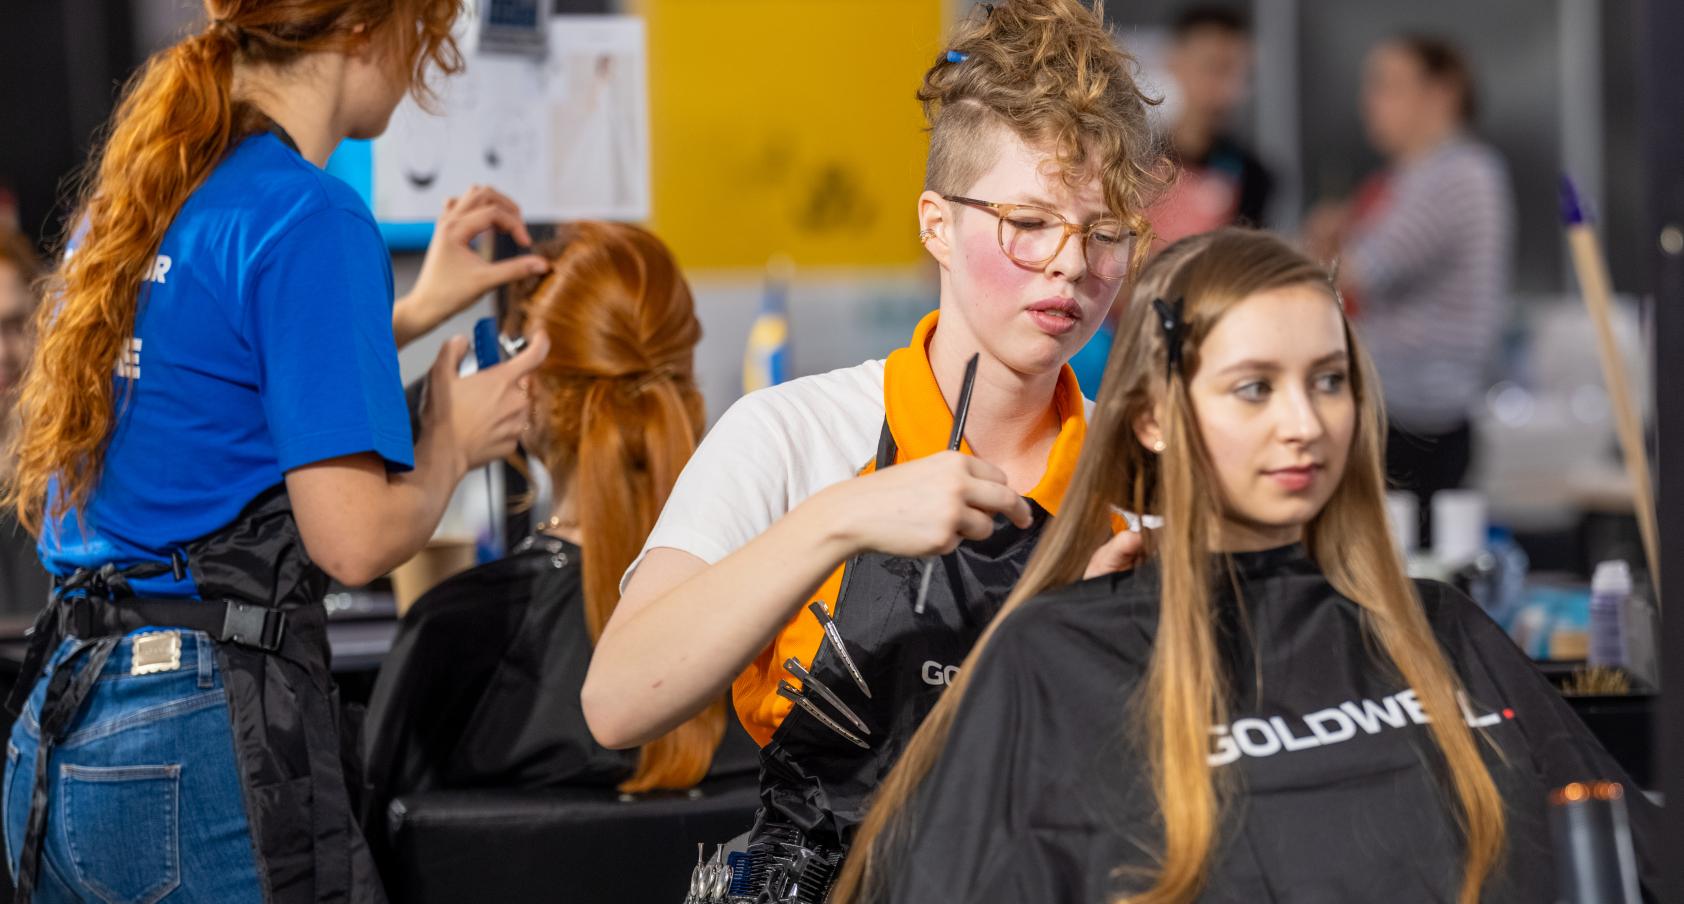 Firda-studente Syta presteert prima bij Euroskills voor kappers